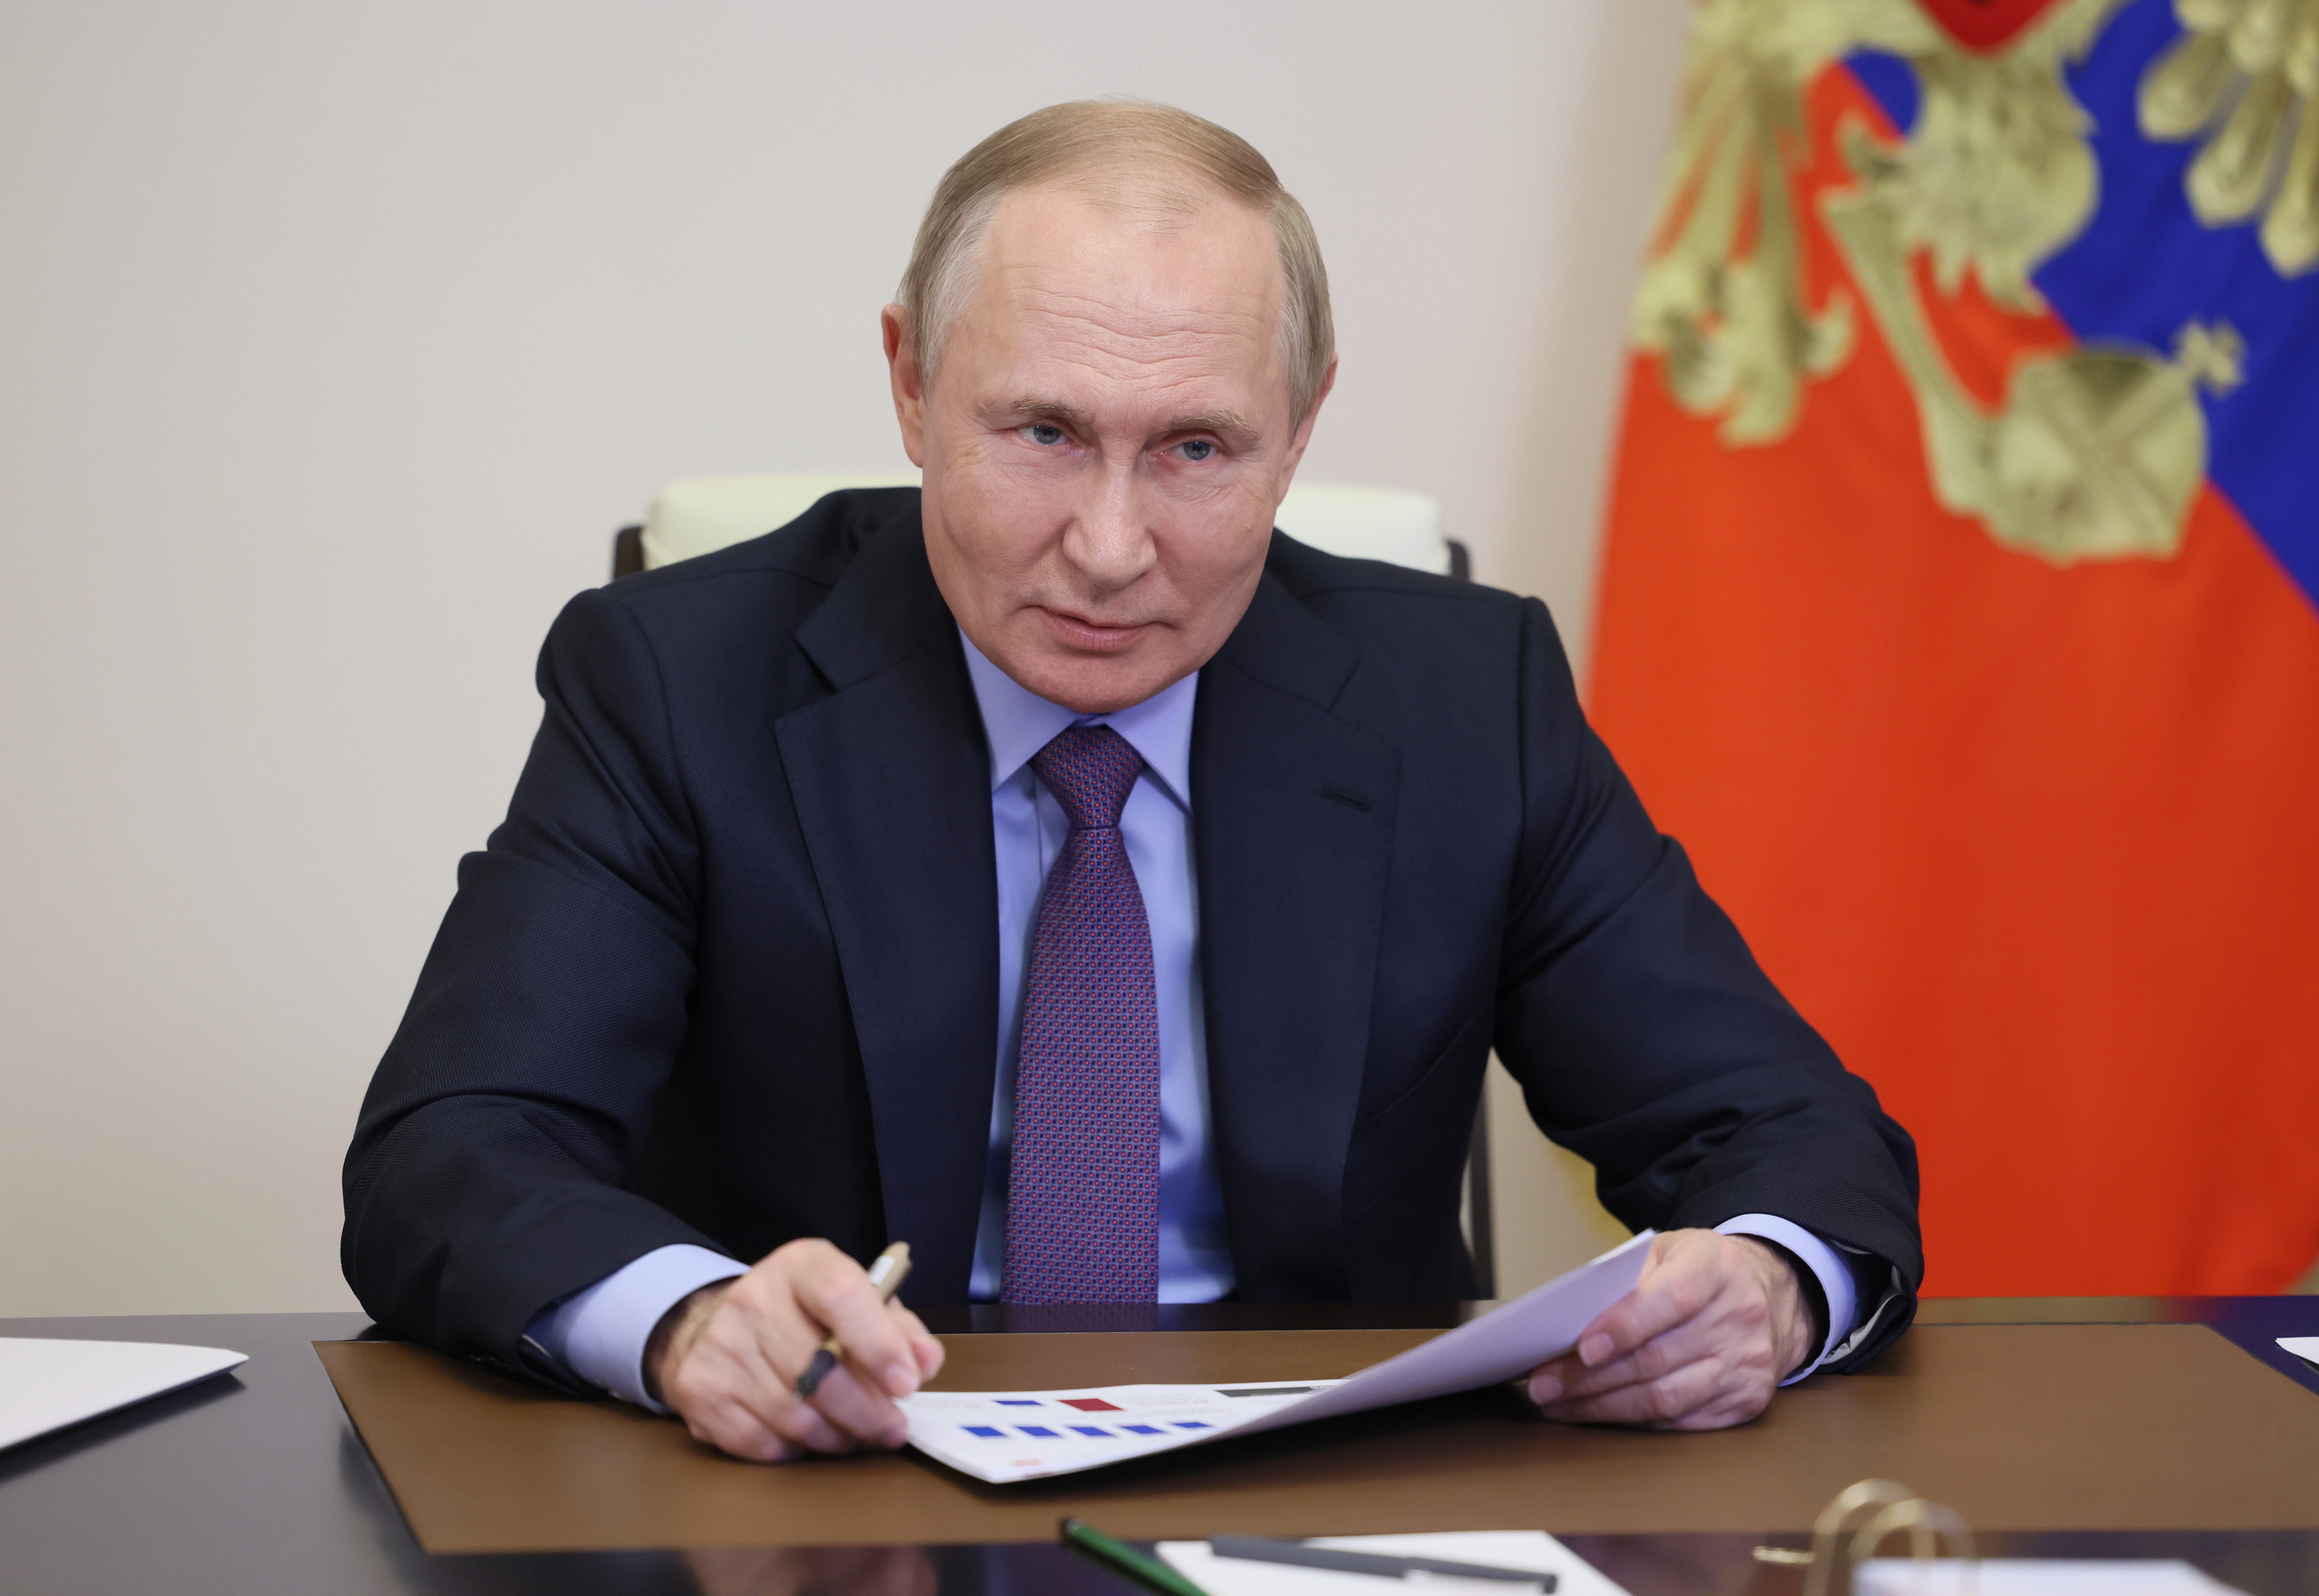 Putin aprueba la creación de centros de entrenamiento militar con Bielorrusia